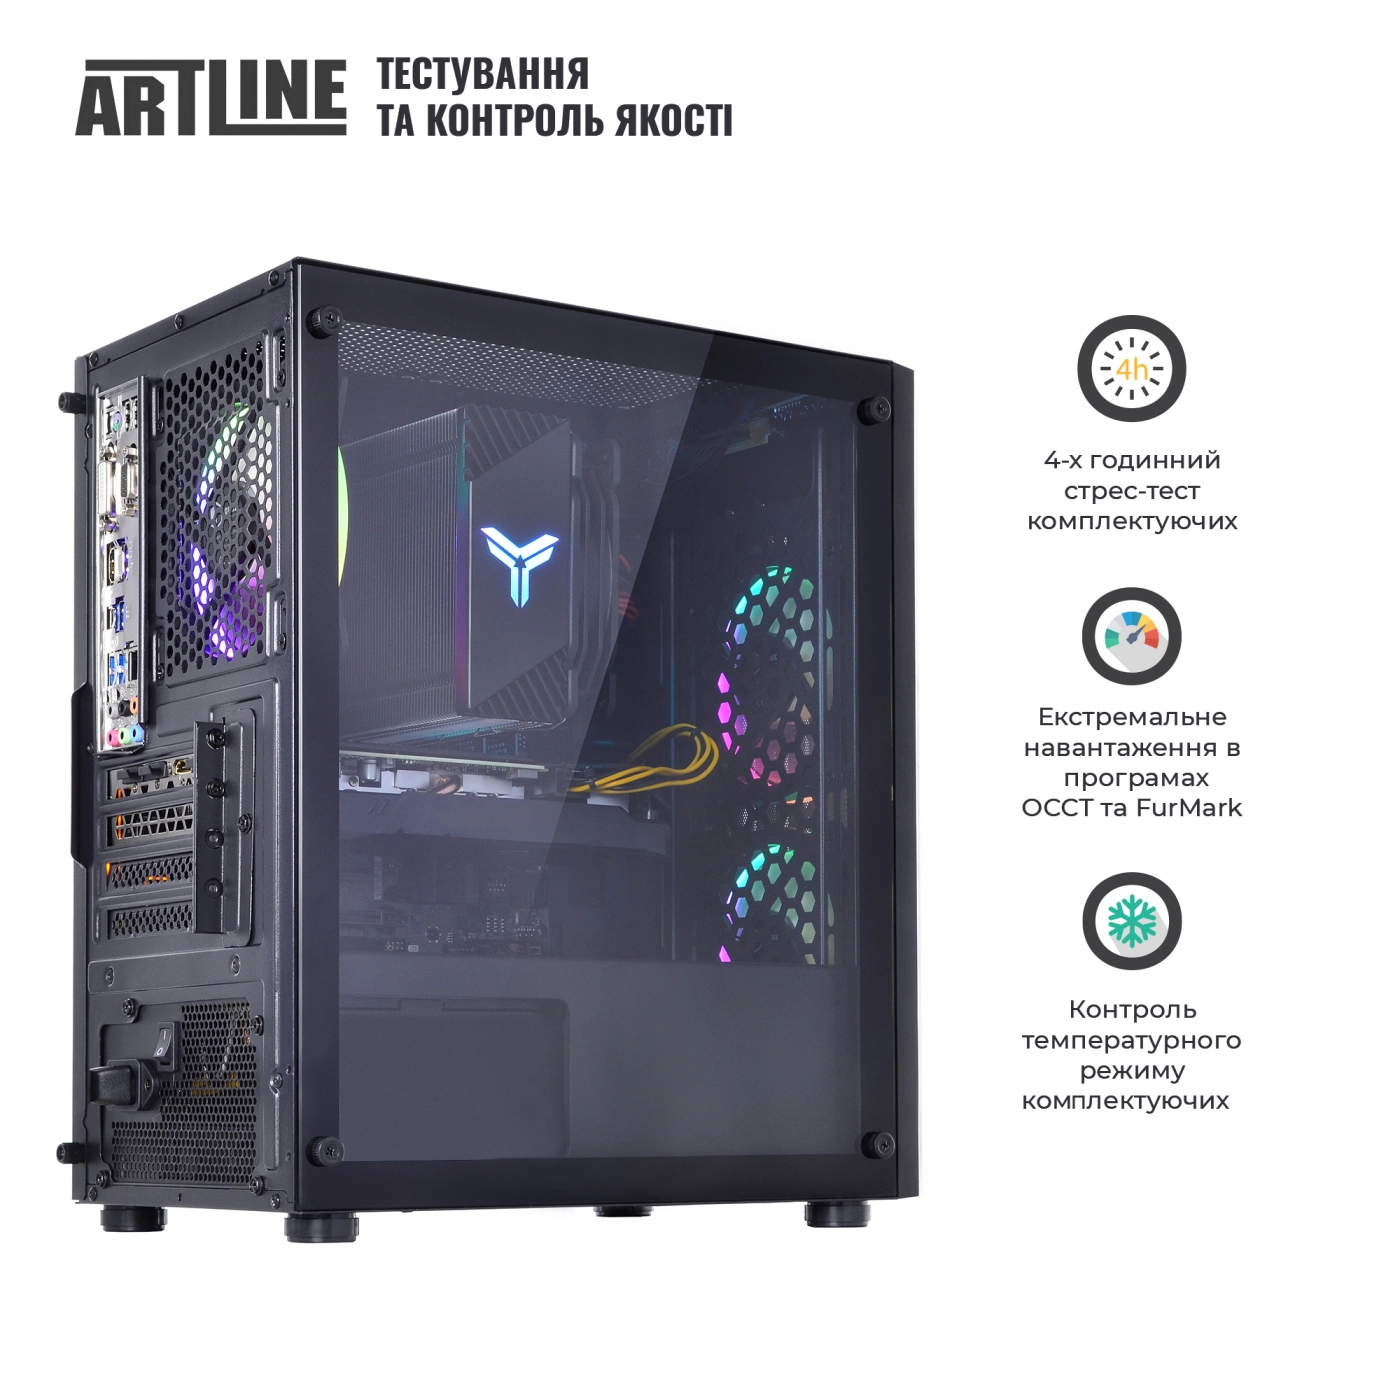 Купить Компьютер ARTLINE Gaming X51v21 - фото 8